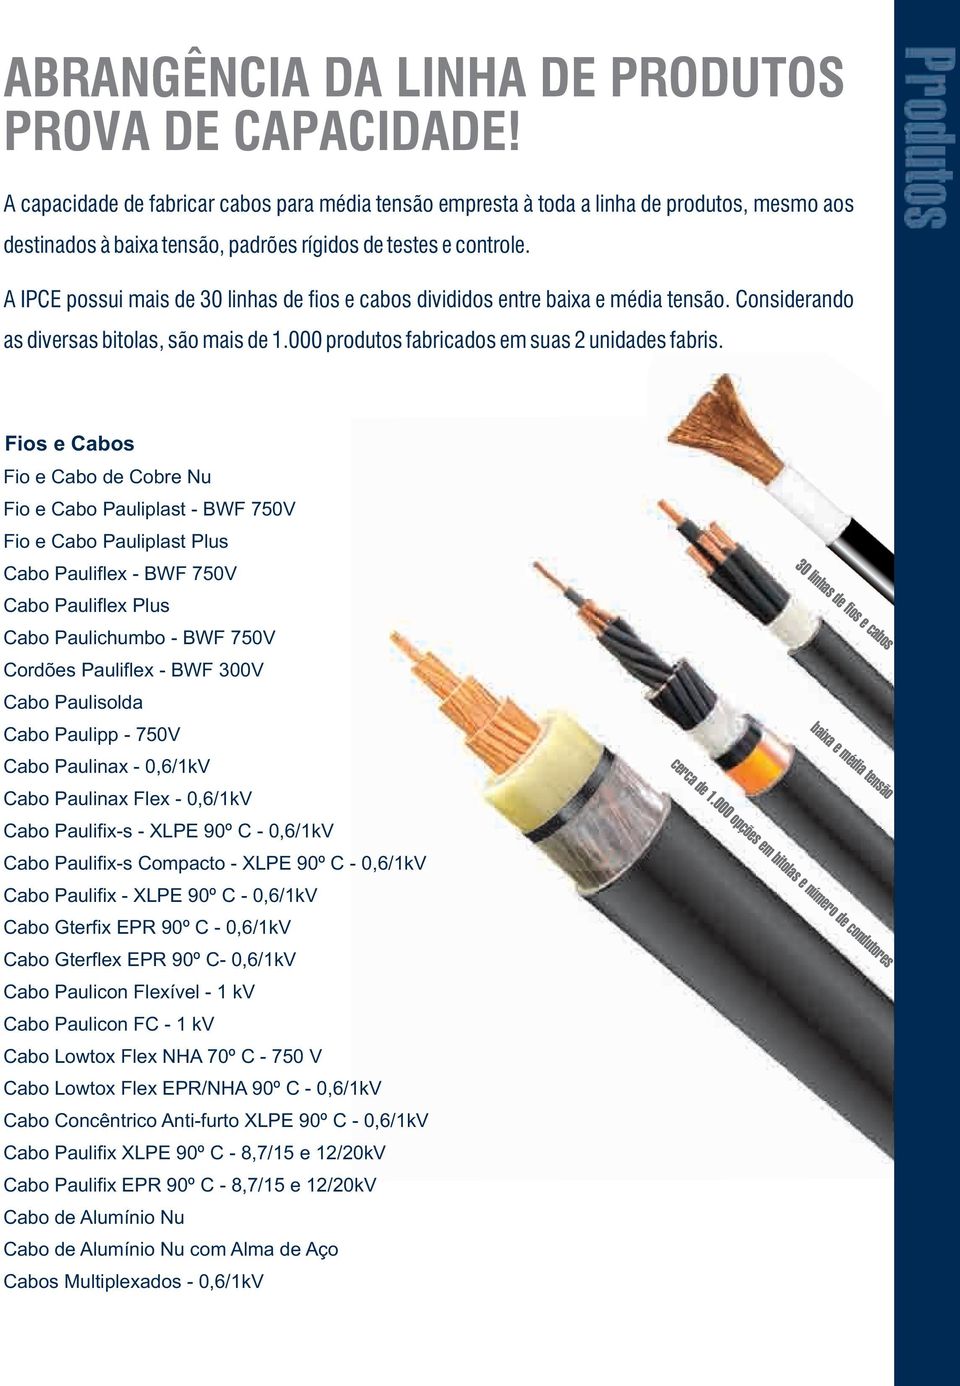 A IPCE possui mais de 30 linhas de fios e cabos divididos entre baixa e média tensão. Considerando as diversas bitolas, são mais de 1.000 produtos fabricados em suas 2 unidades fabris.